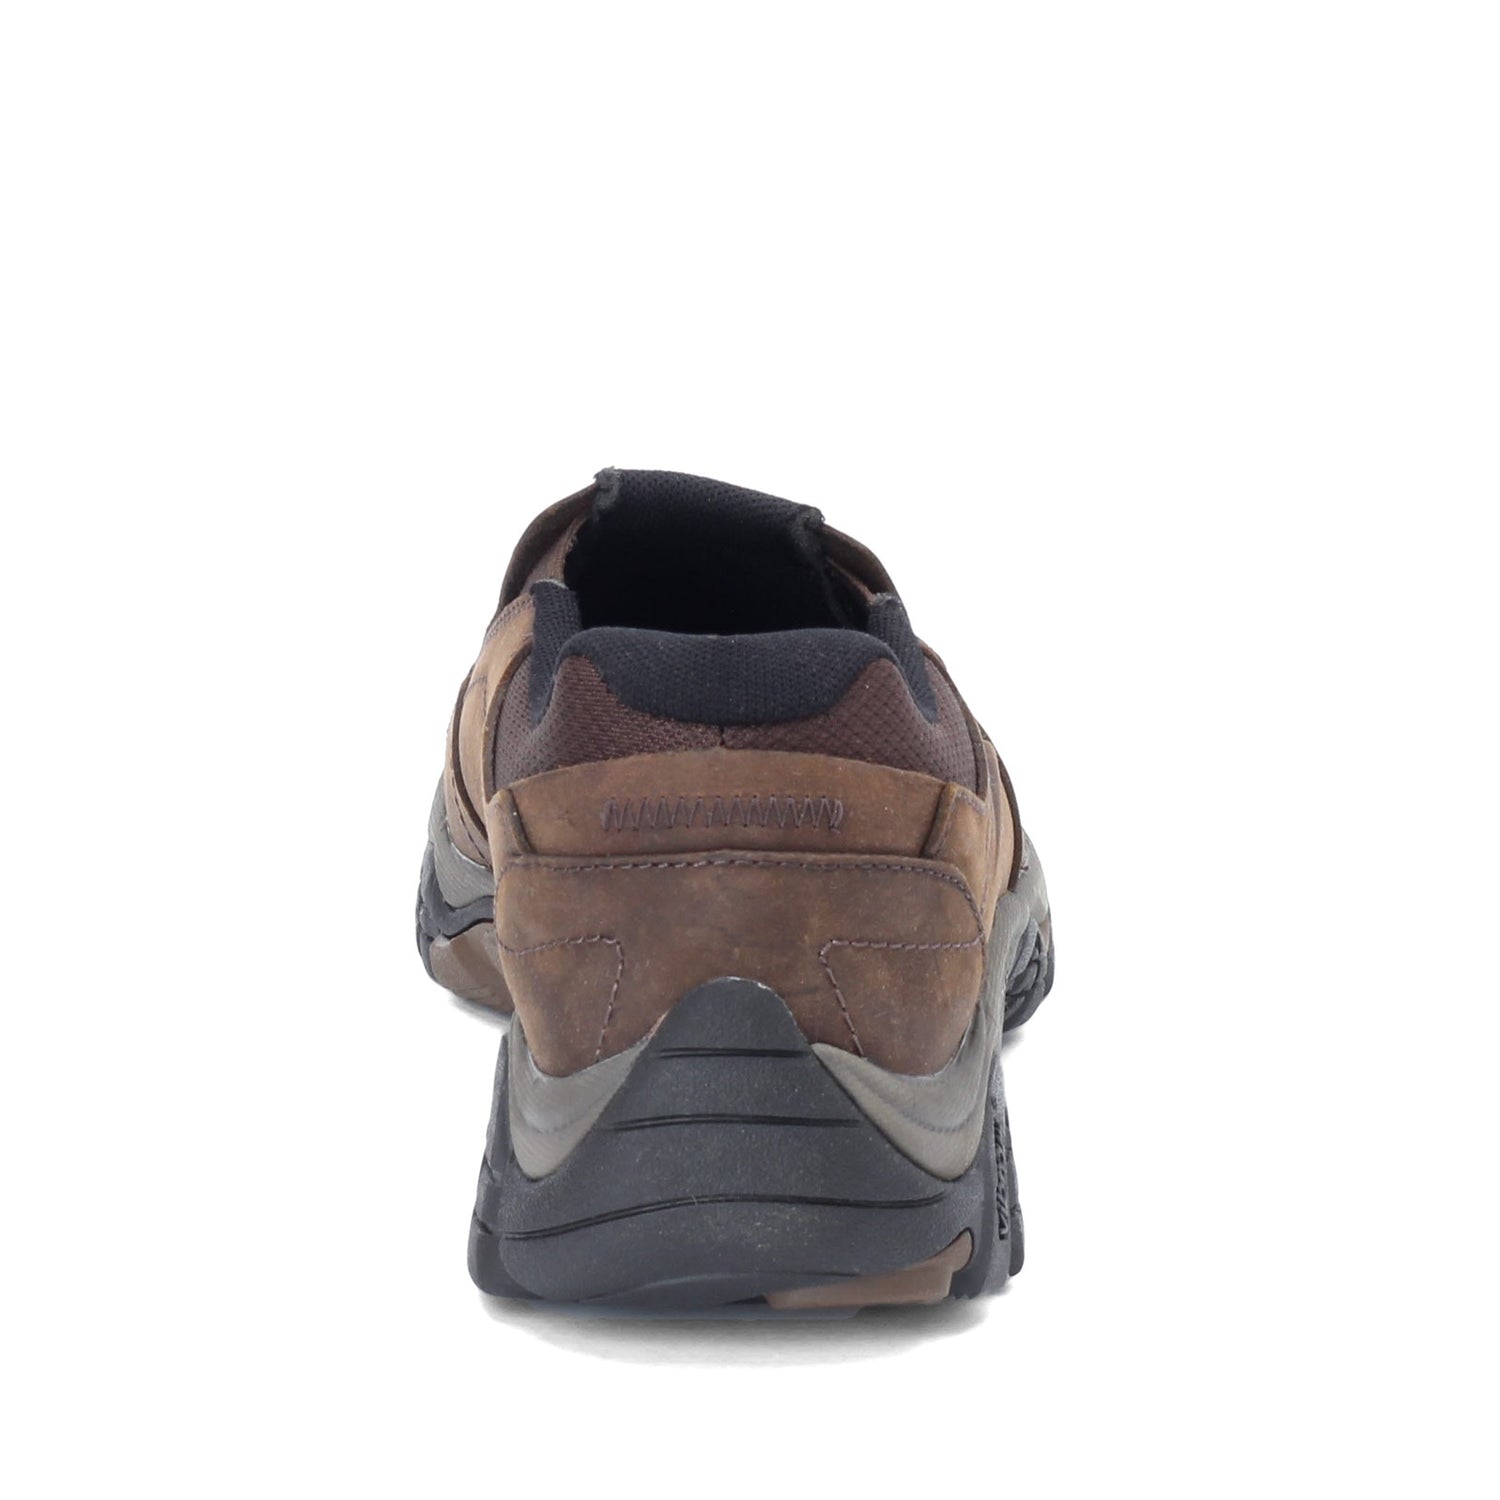 Peltz Shoes  Men's Merrell Moab Adventure Moc Slip-On - Wide Width DARK EARTH J91837W